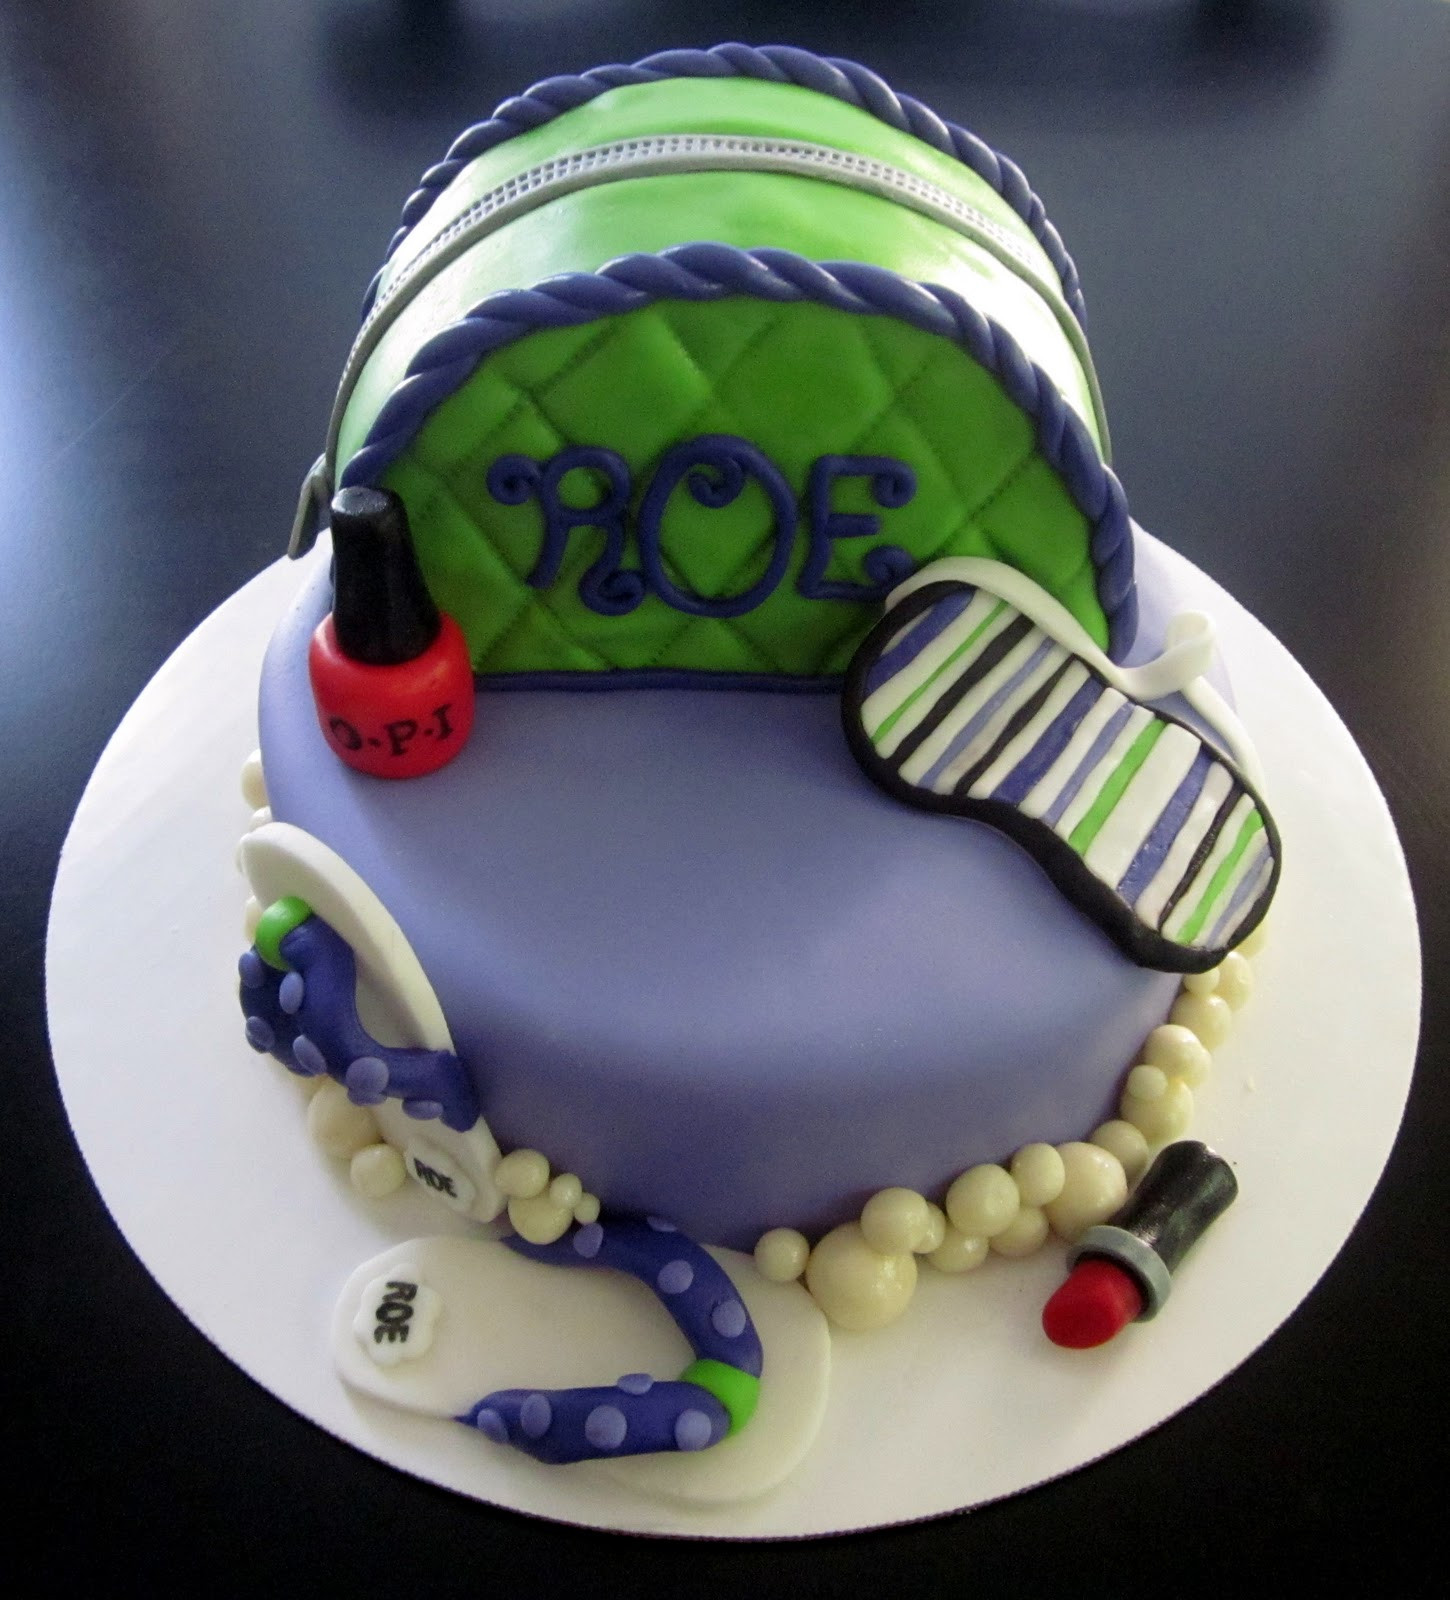 Spa Birthday Cake
 Darlin Designs Spa Birthday Cake